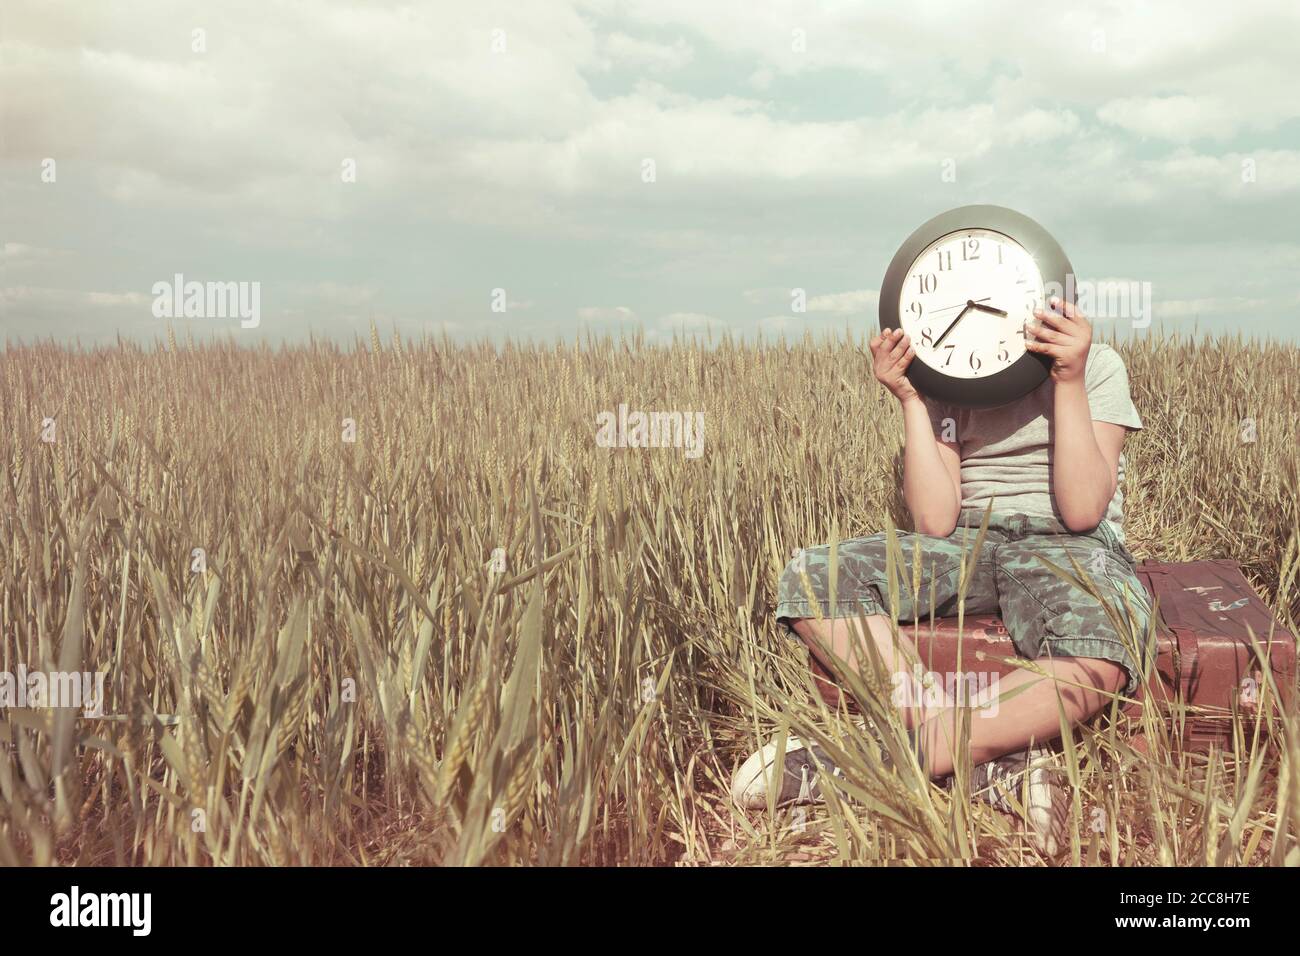 Garçon sur un voyage cache son visage avec une horloge dans un paysage désertique Banque D'Images